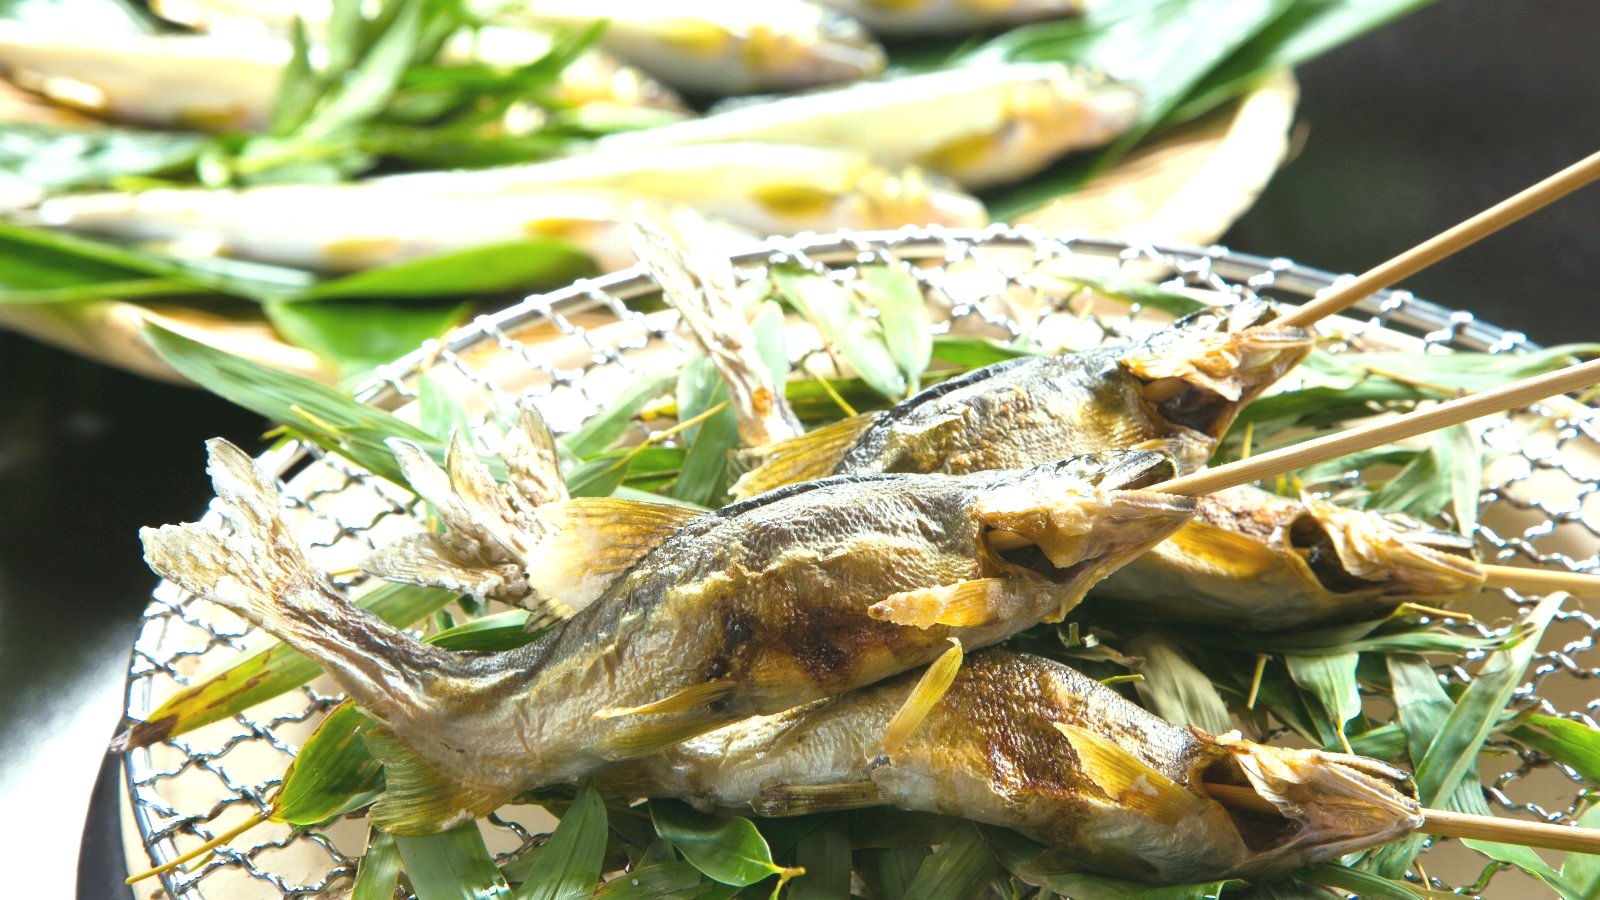 【料理一例】鮎の塩焼き。厚木は鮎の産地として知られ古来より将軍家に献上されるほど美味で有名です